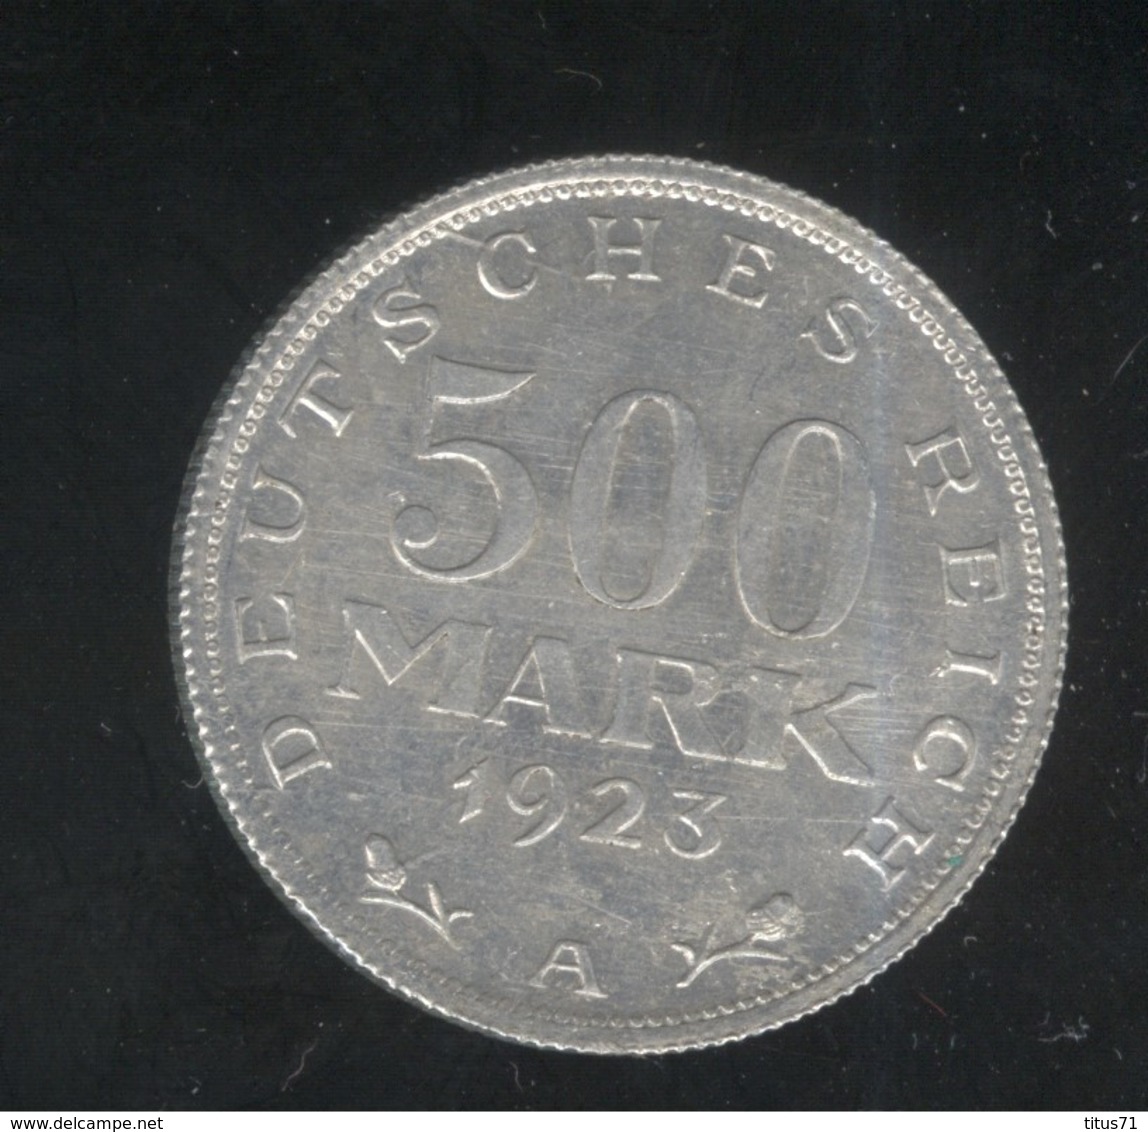 500 Mark Allemagne / Germany 1923 A - TTB++ - 50 Renten- & 50 Reichspfennig